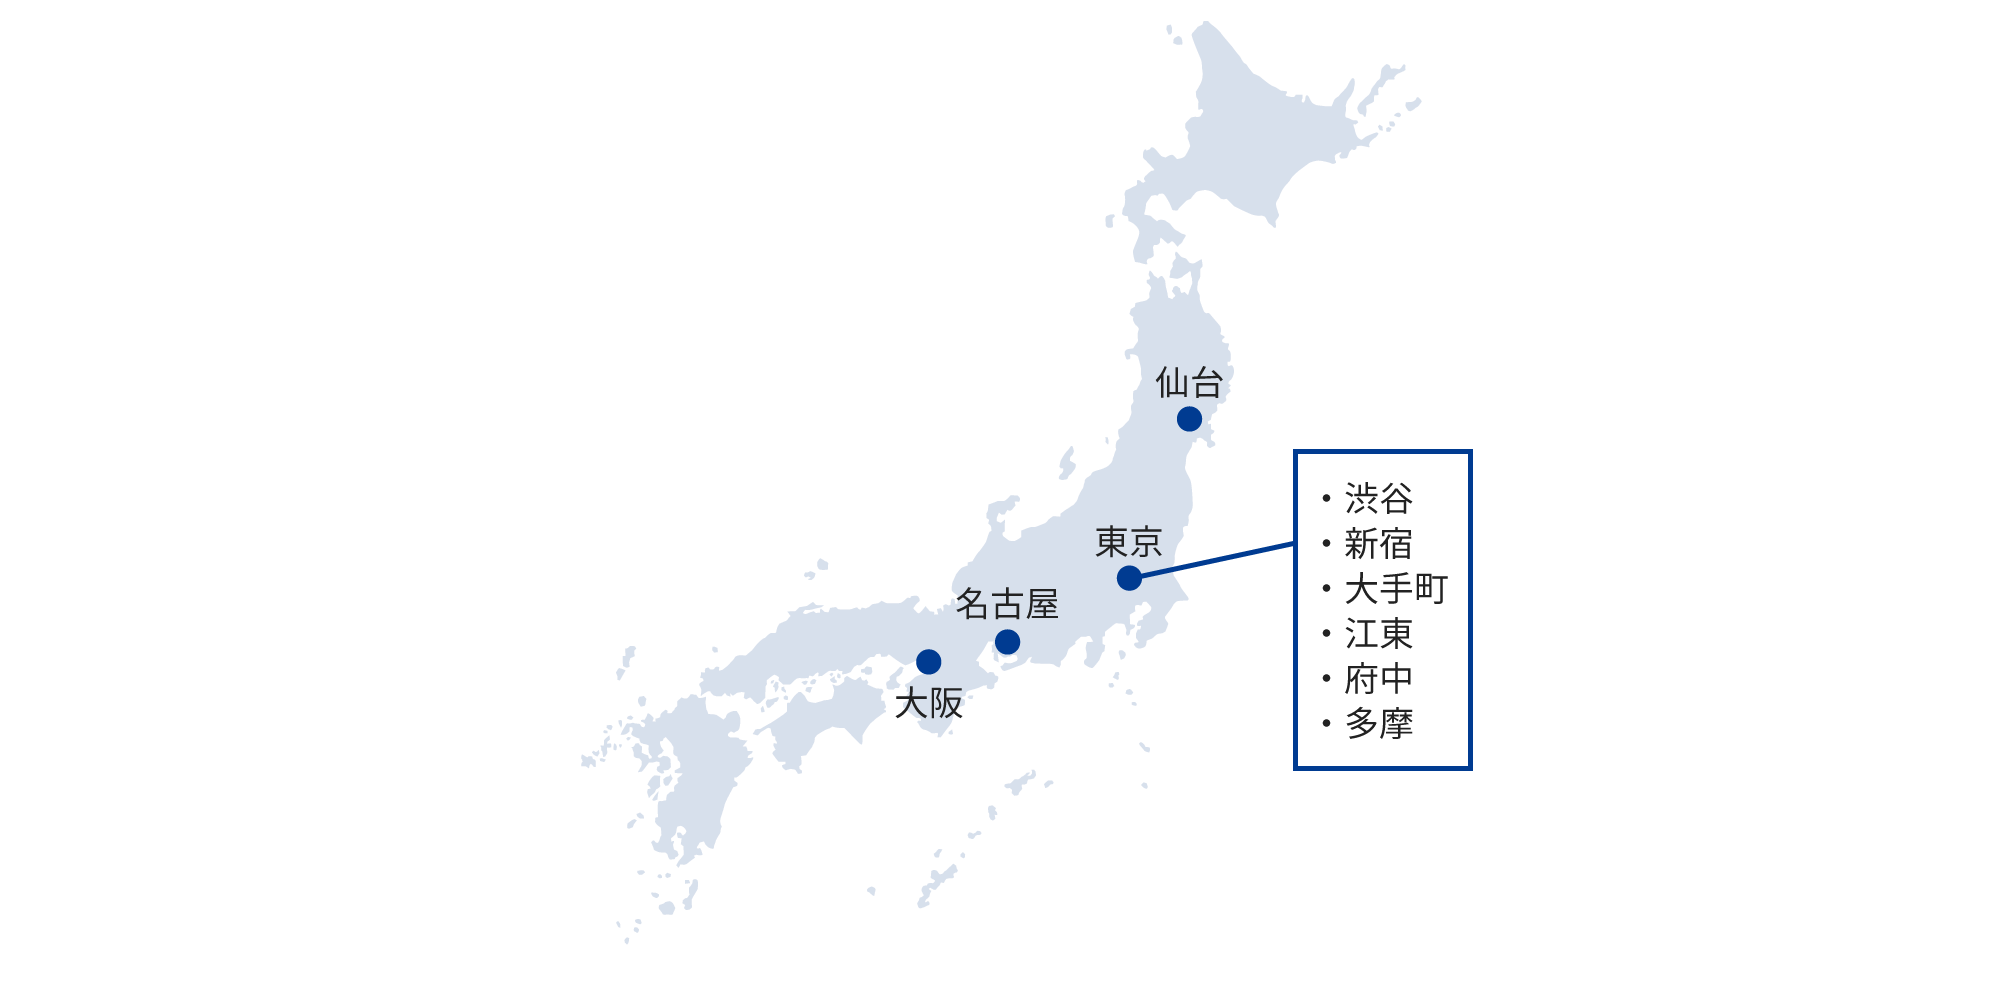 仙台、東京(渋谷、新宿、大手町、江東、府中、多摩)、名古屋、大阪にご利用いただけるサービス提供データセンターを設置